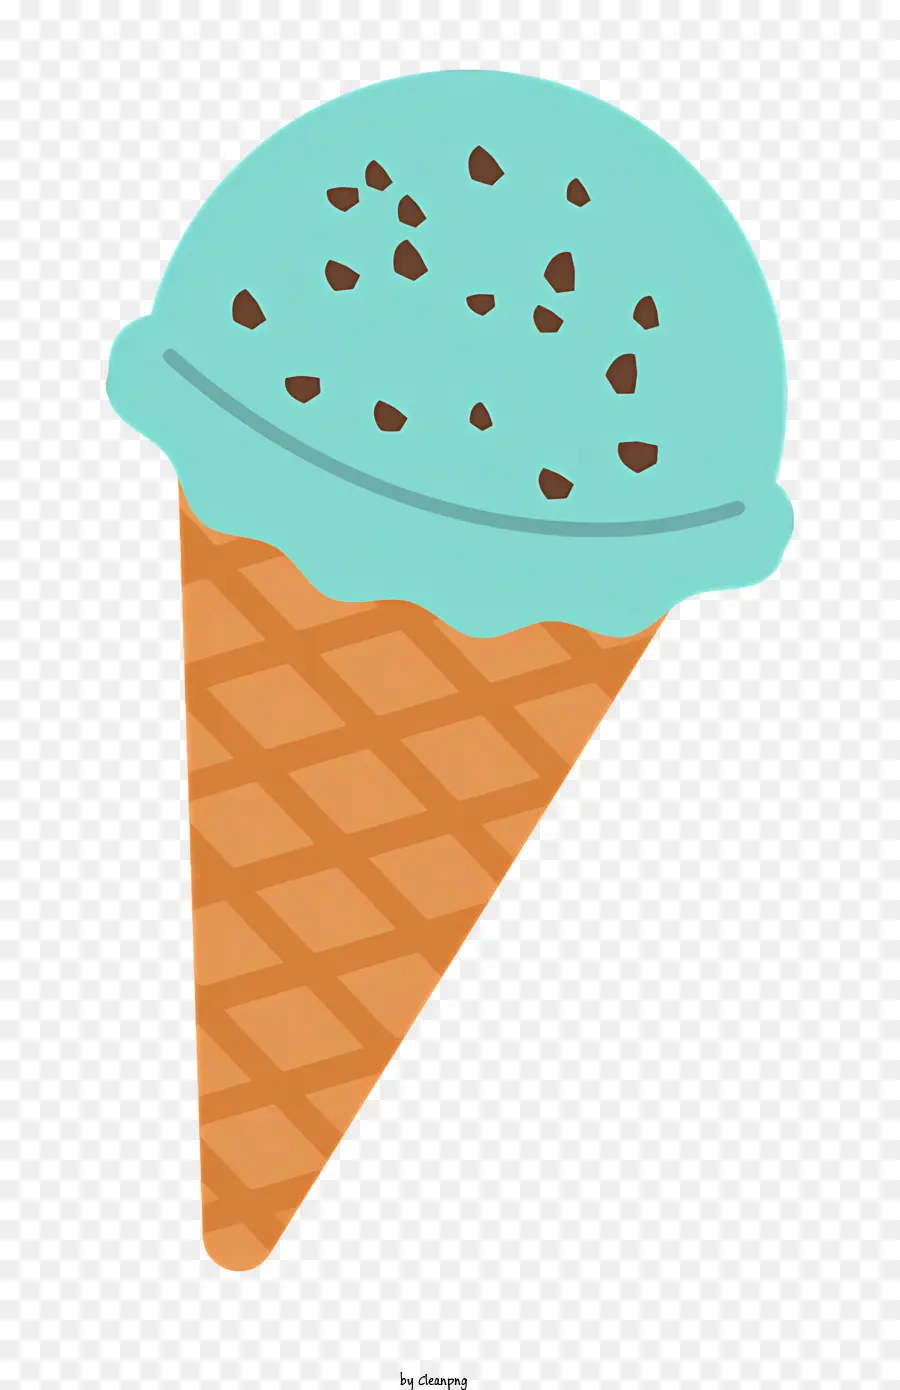 food ice cream cone chocolate chips blue ice cream white swirls